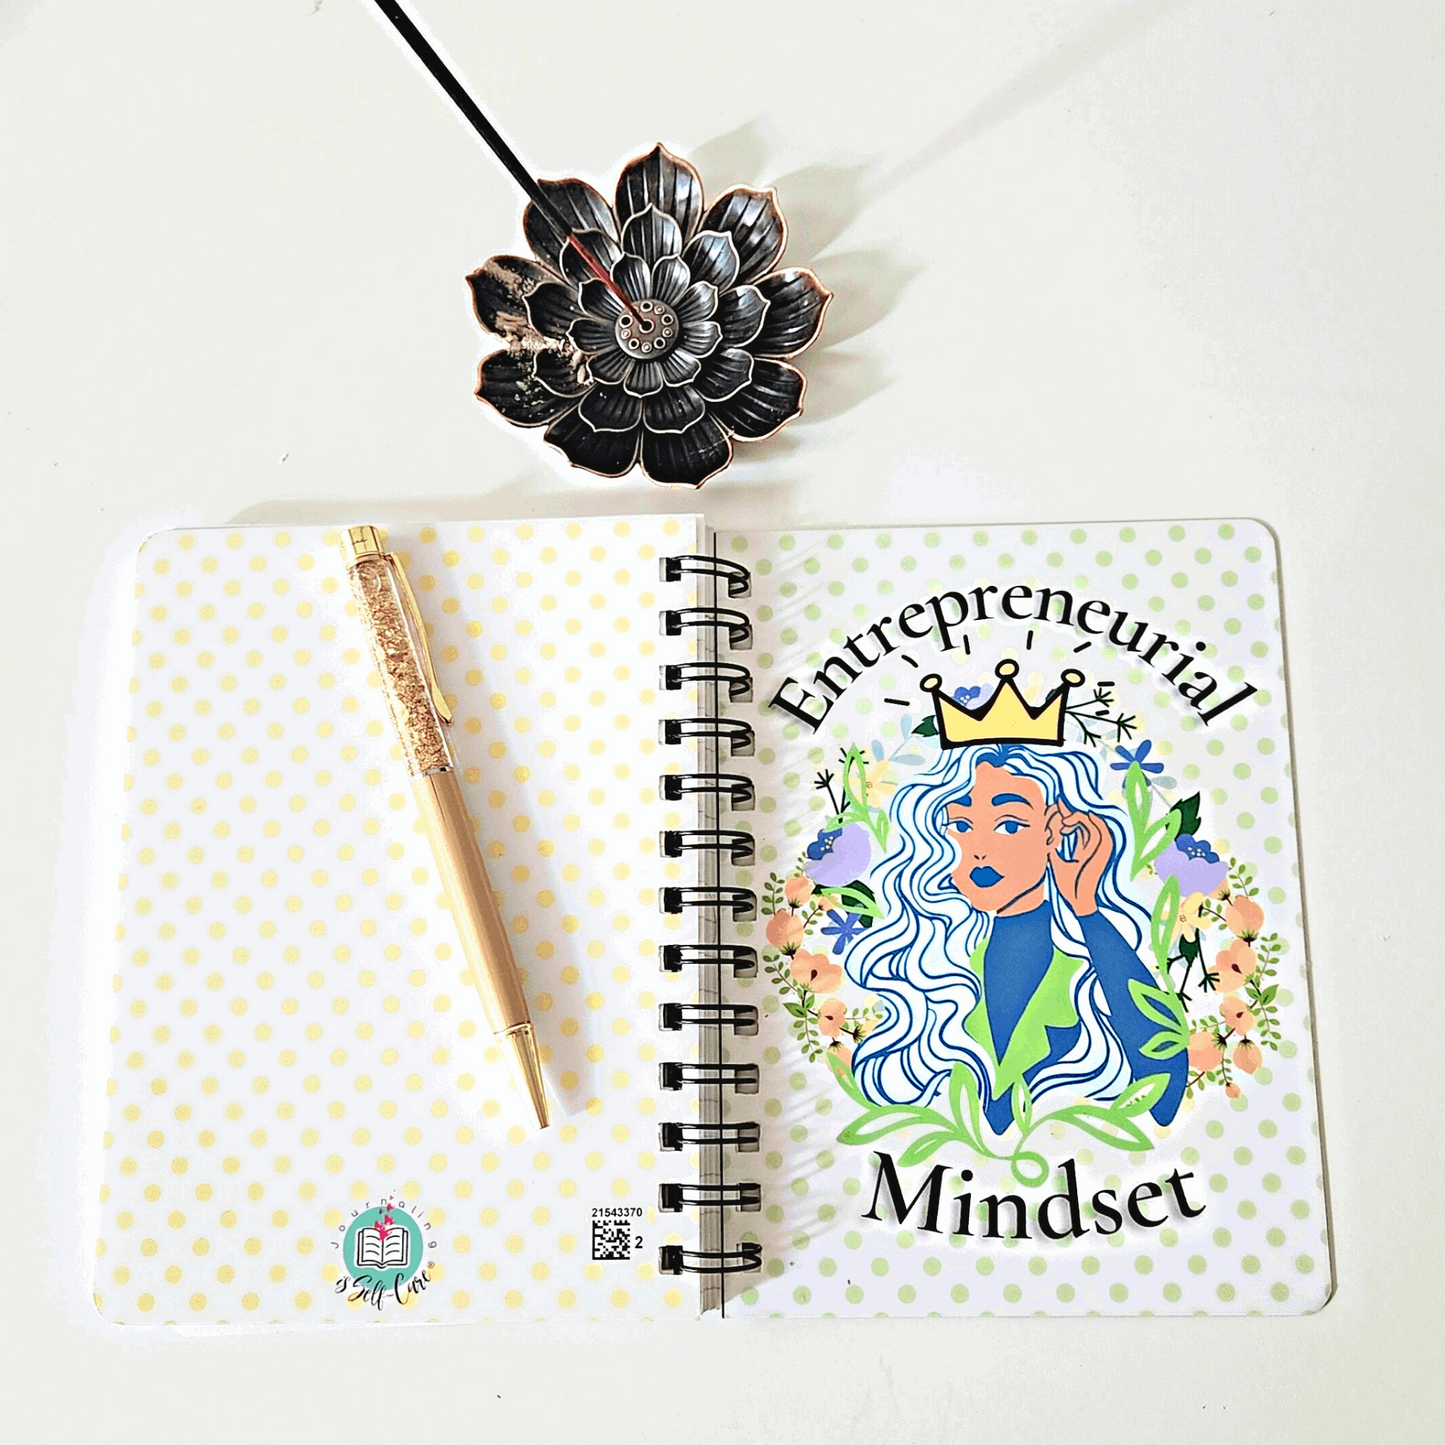 Entrepreneurial Mindset Journal with Mindset Shifting Tips